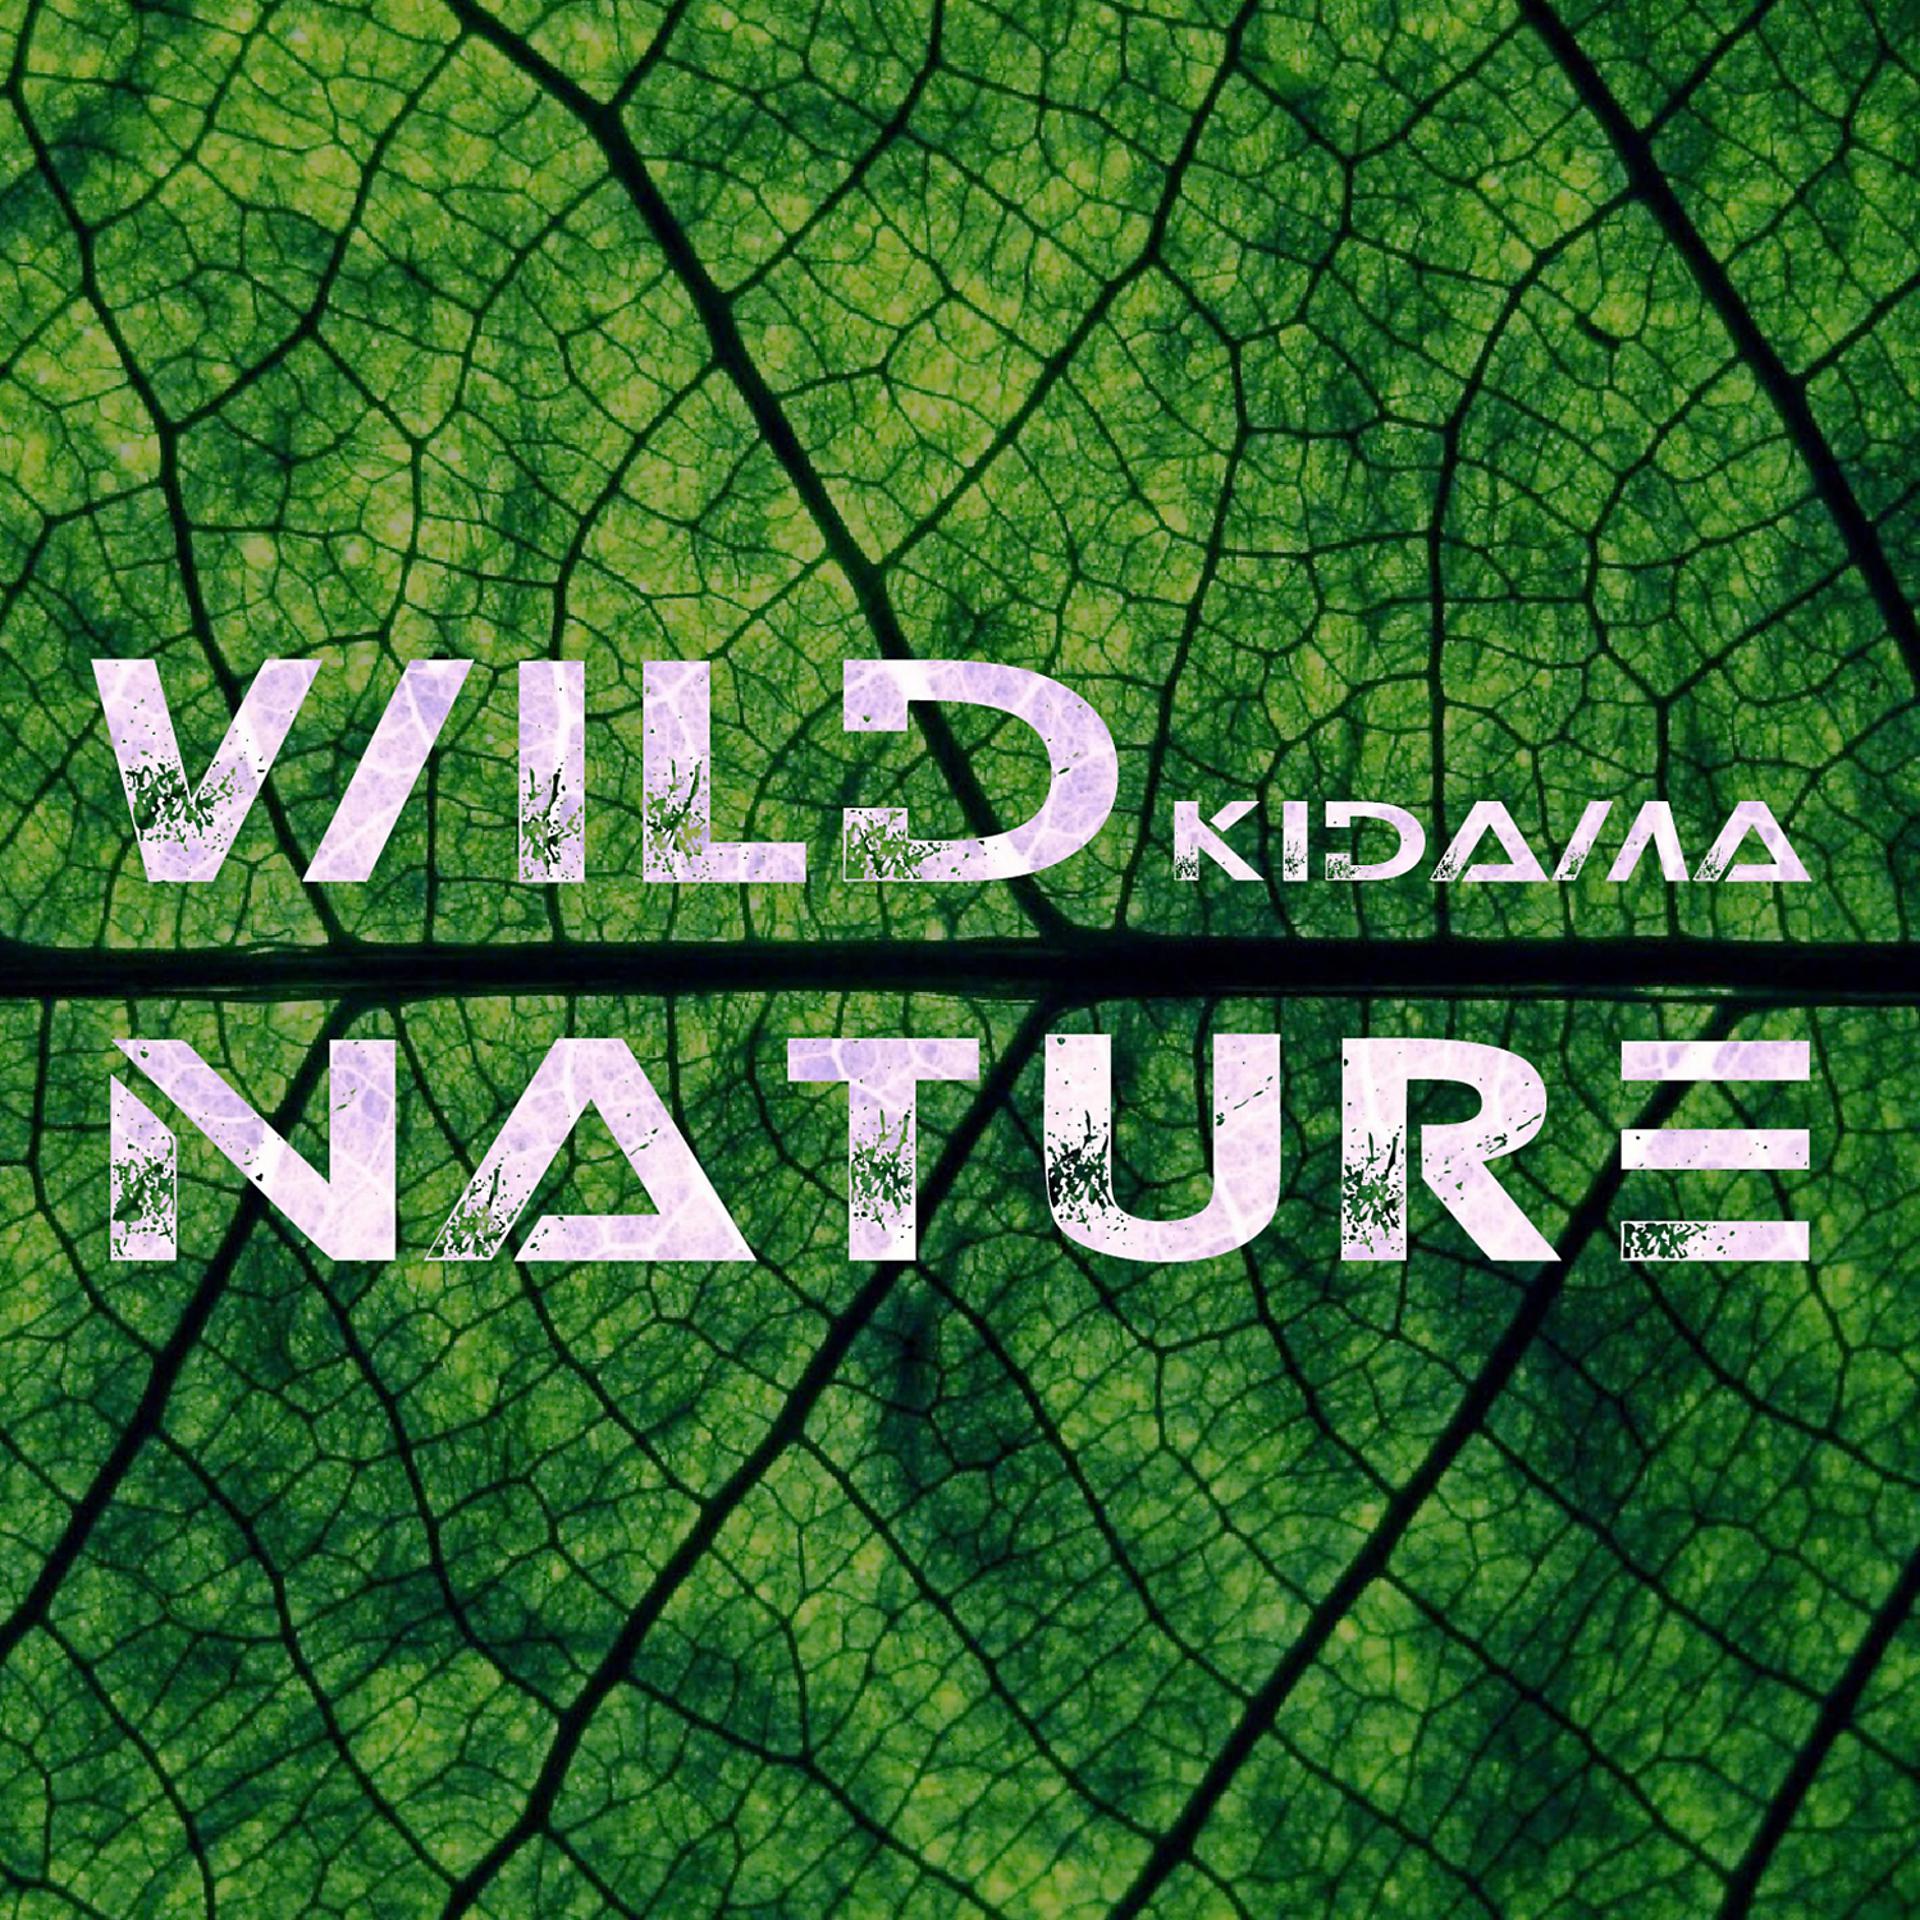 Постер альбома Wild Nature